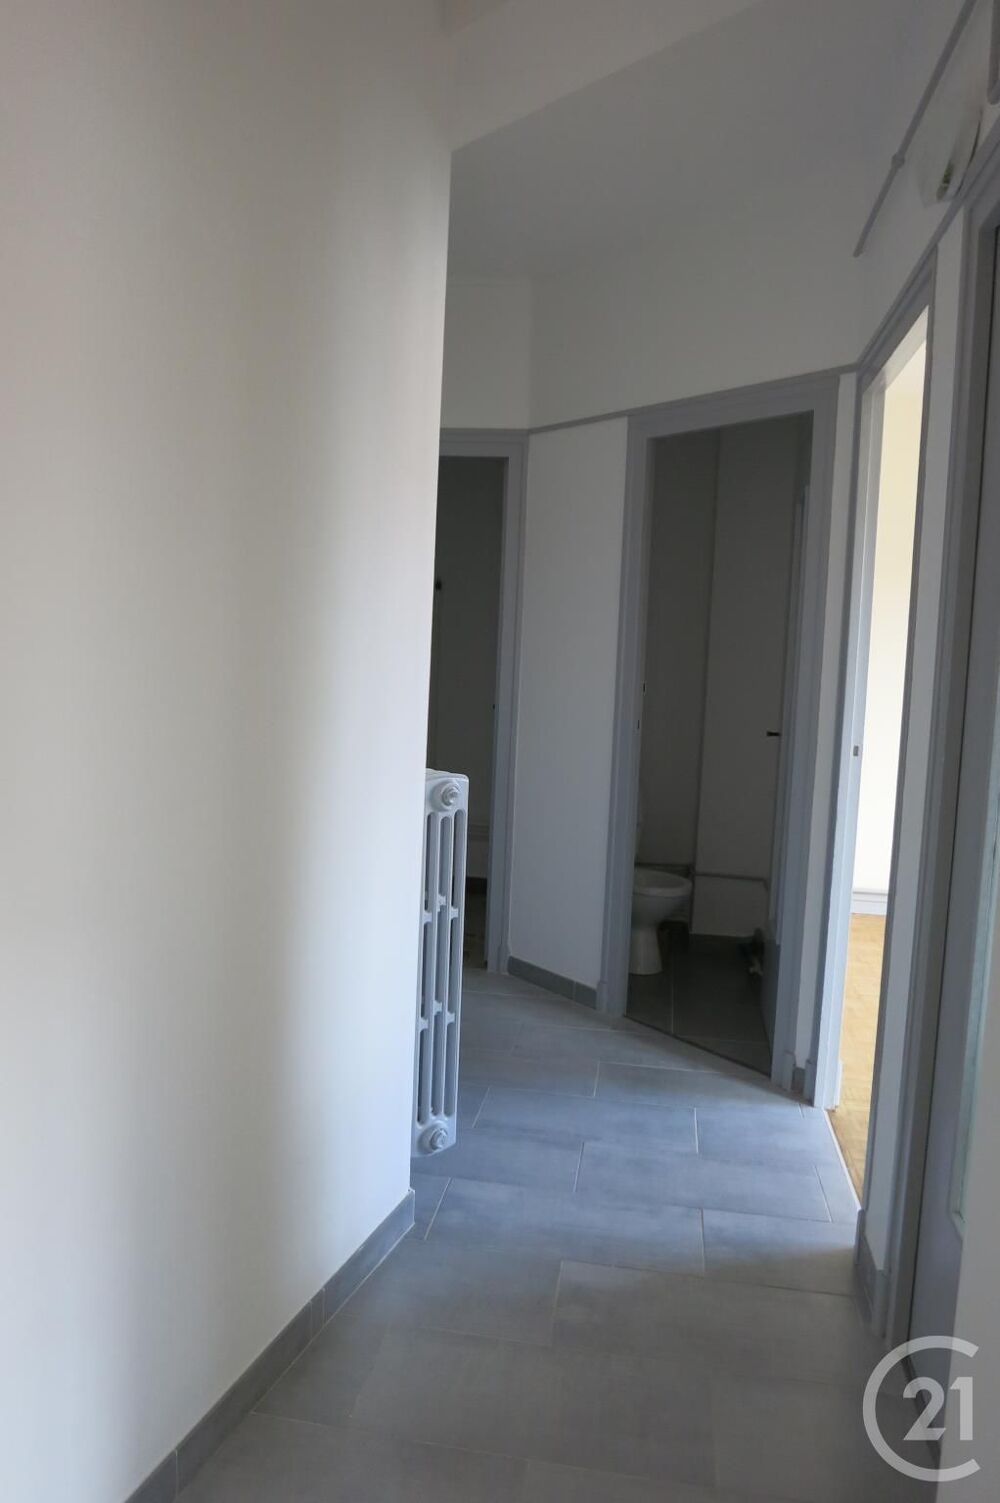 location Appartement - 2 pièce(s) - 53 m² Montluçon (03100)